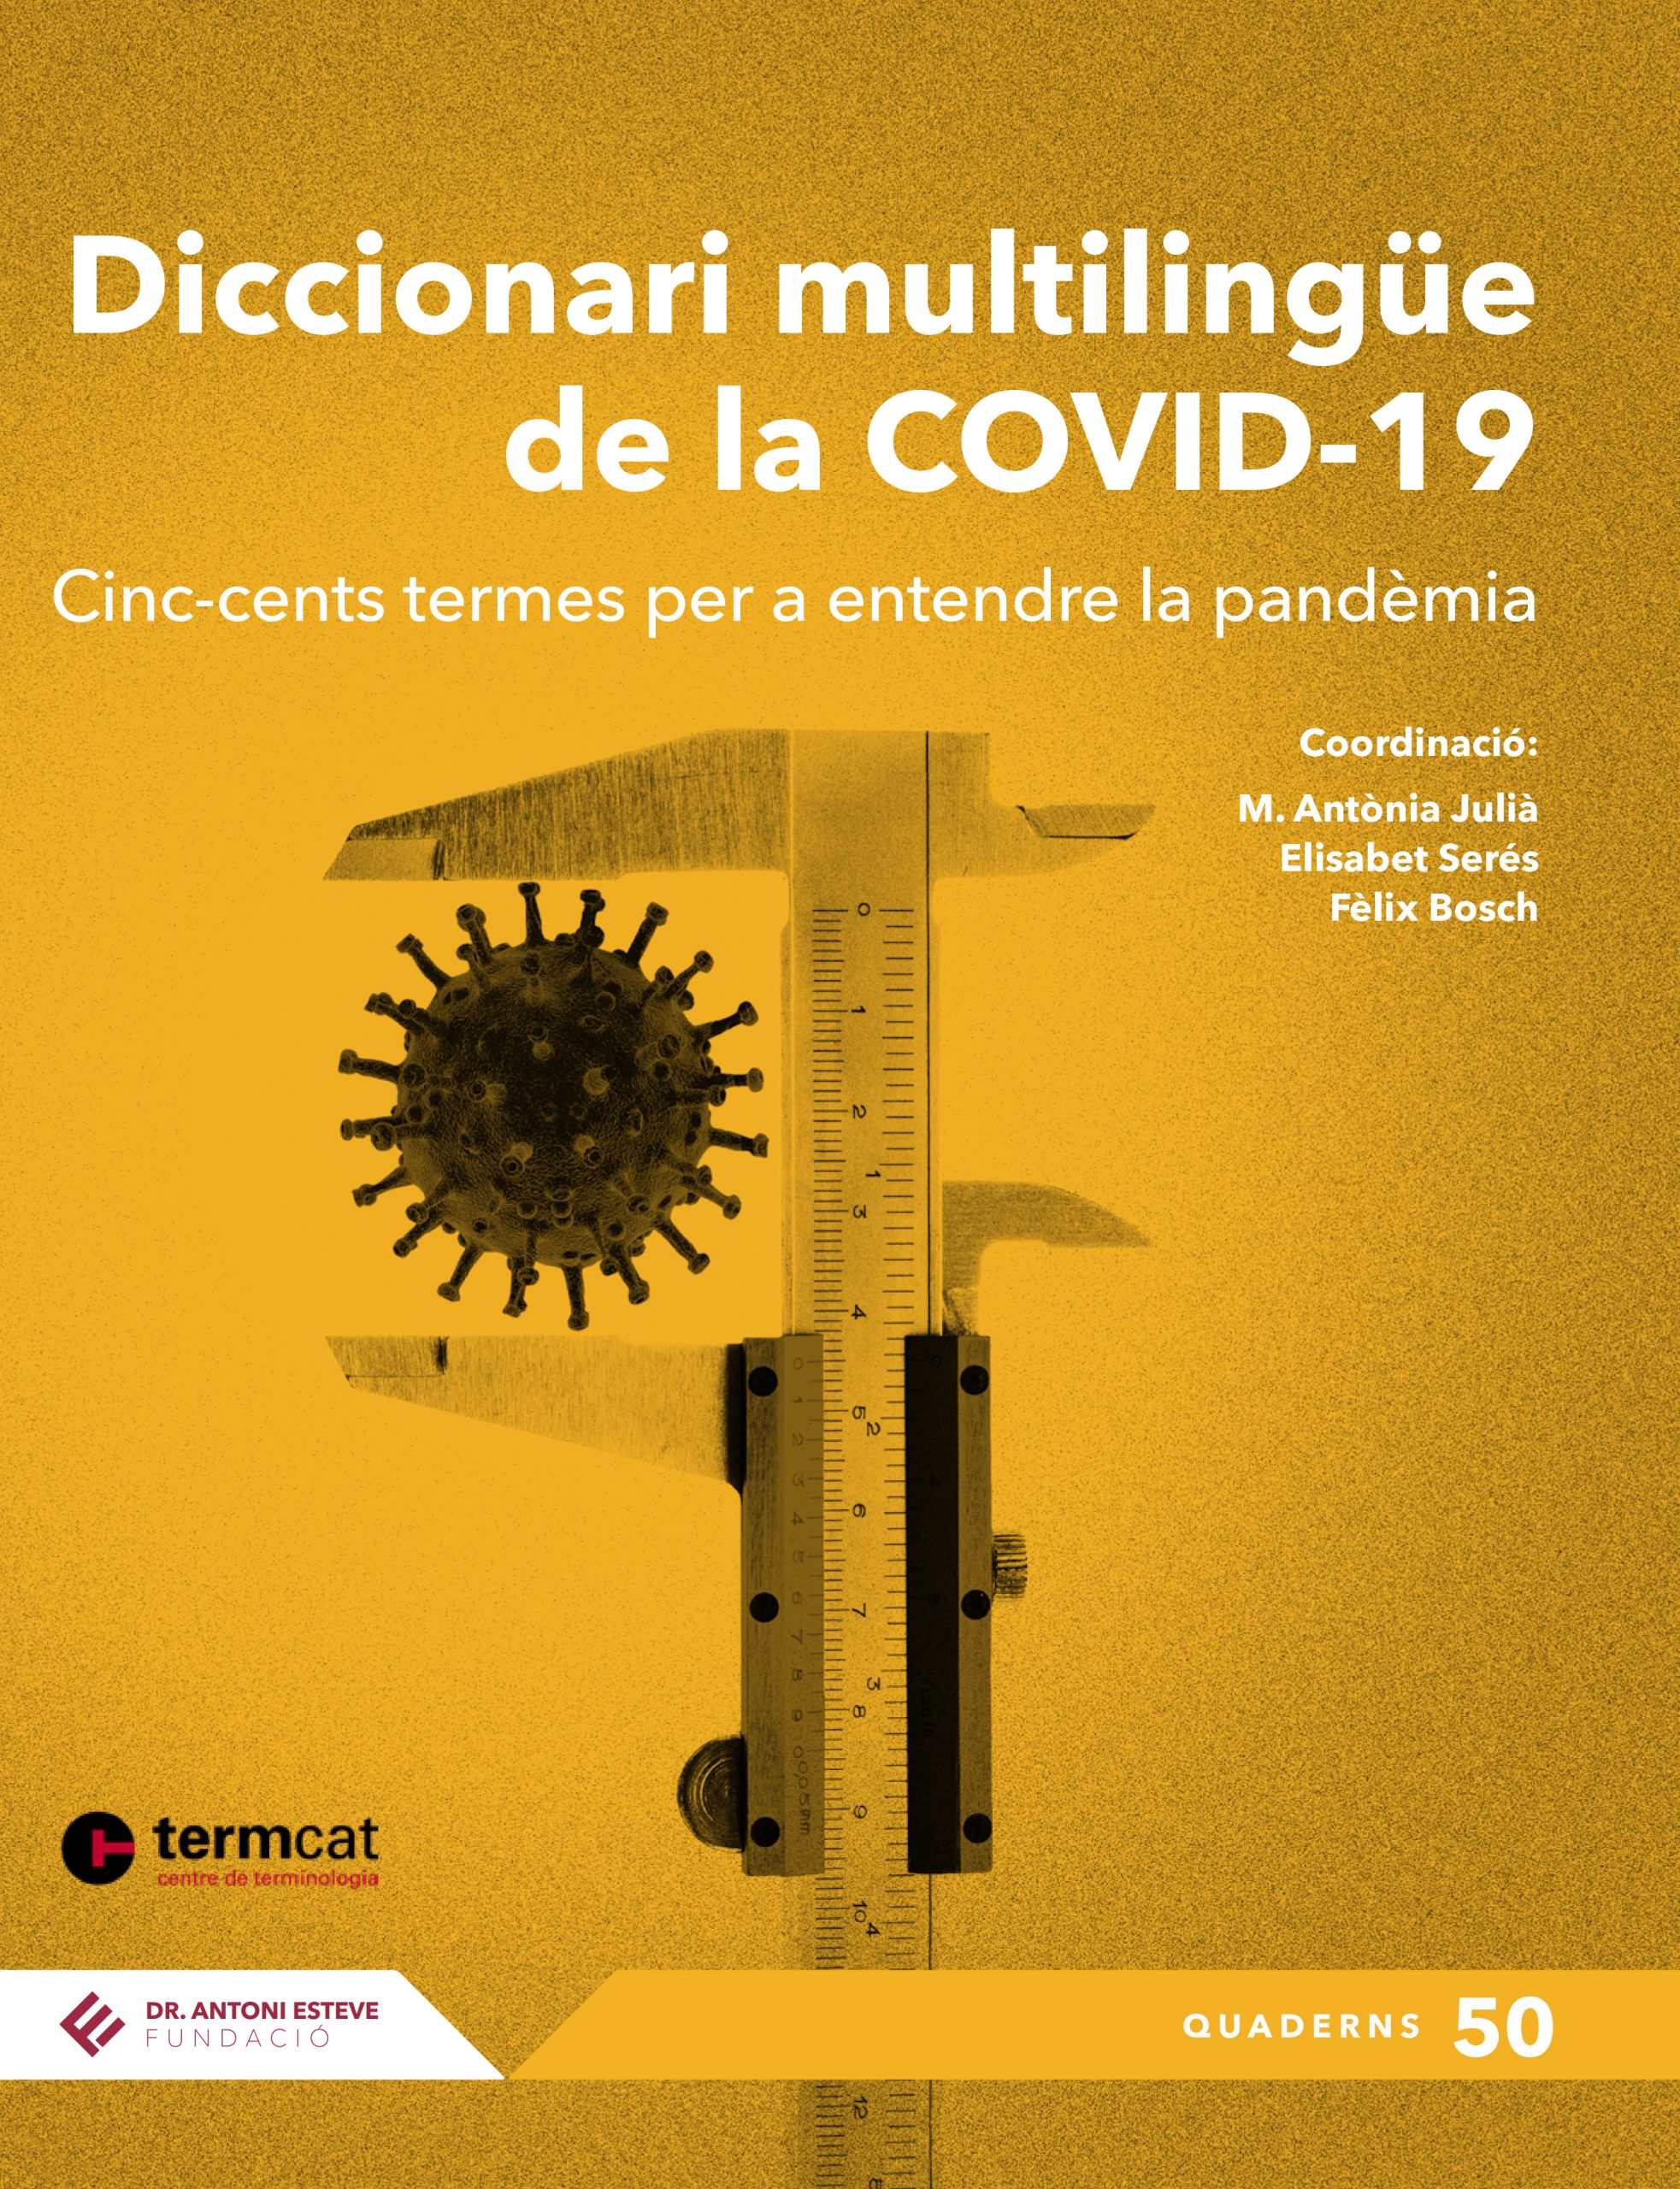 Un diccionario multilingüe en catalán destaca los 500 términos más relevantes sobre COVID-19